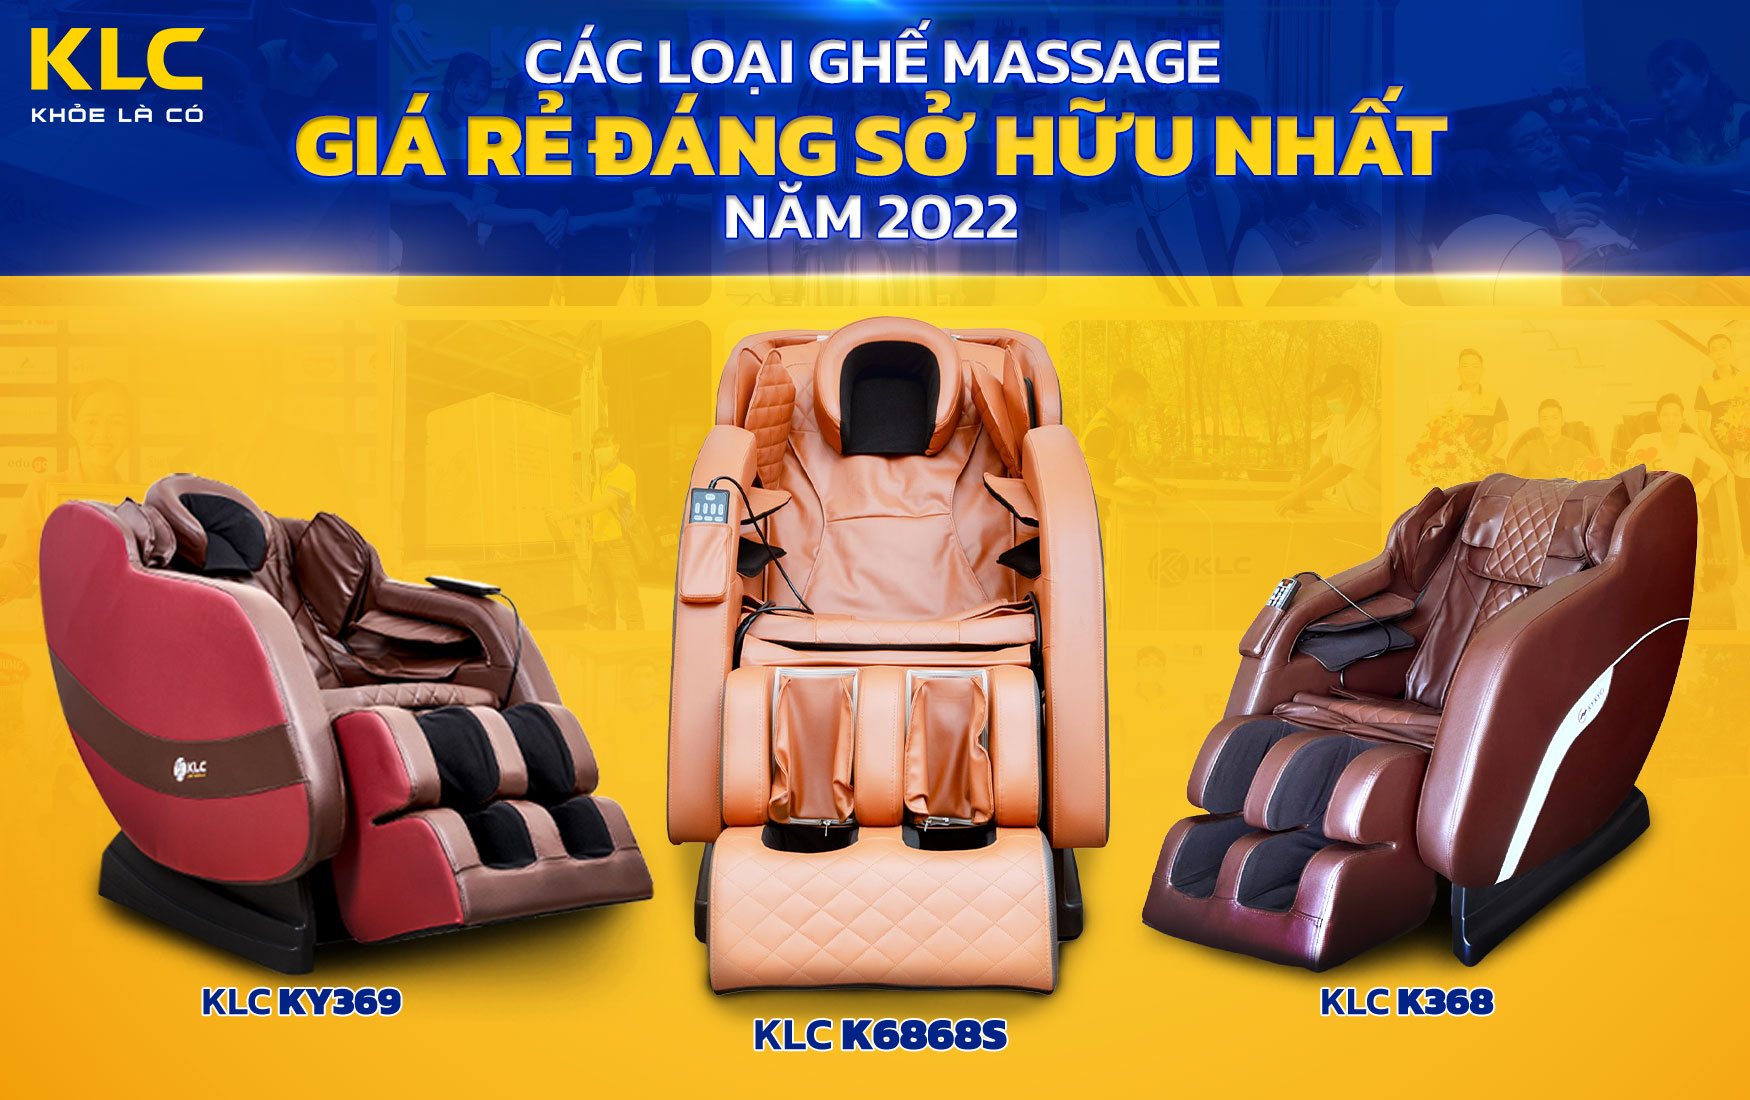 Các Loại Ghế Massage Giá Rẻ Đáng Sở Hữu Nhất 2022